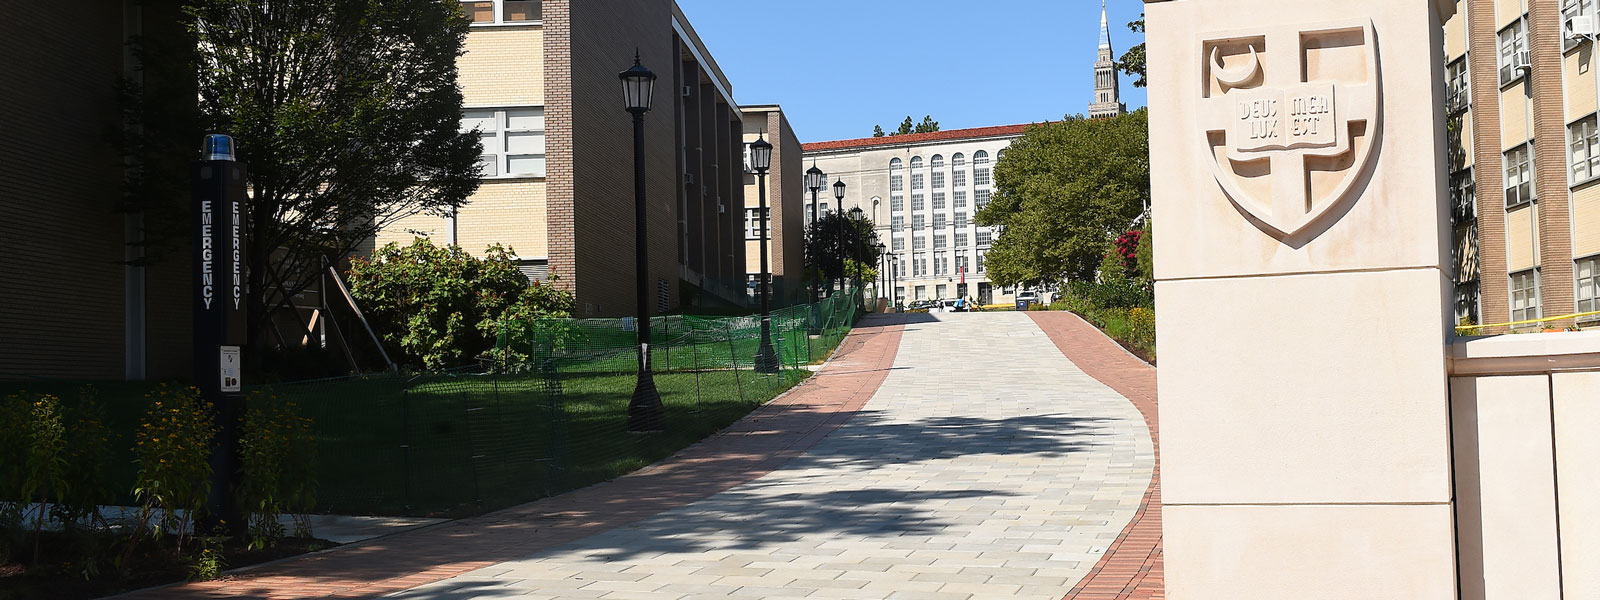 Entranceway of campus